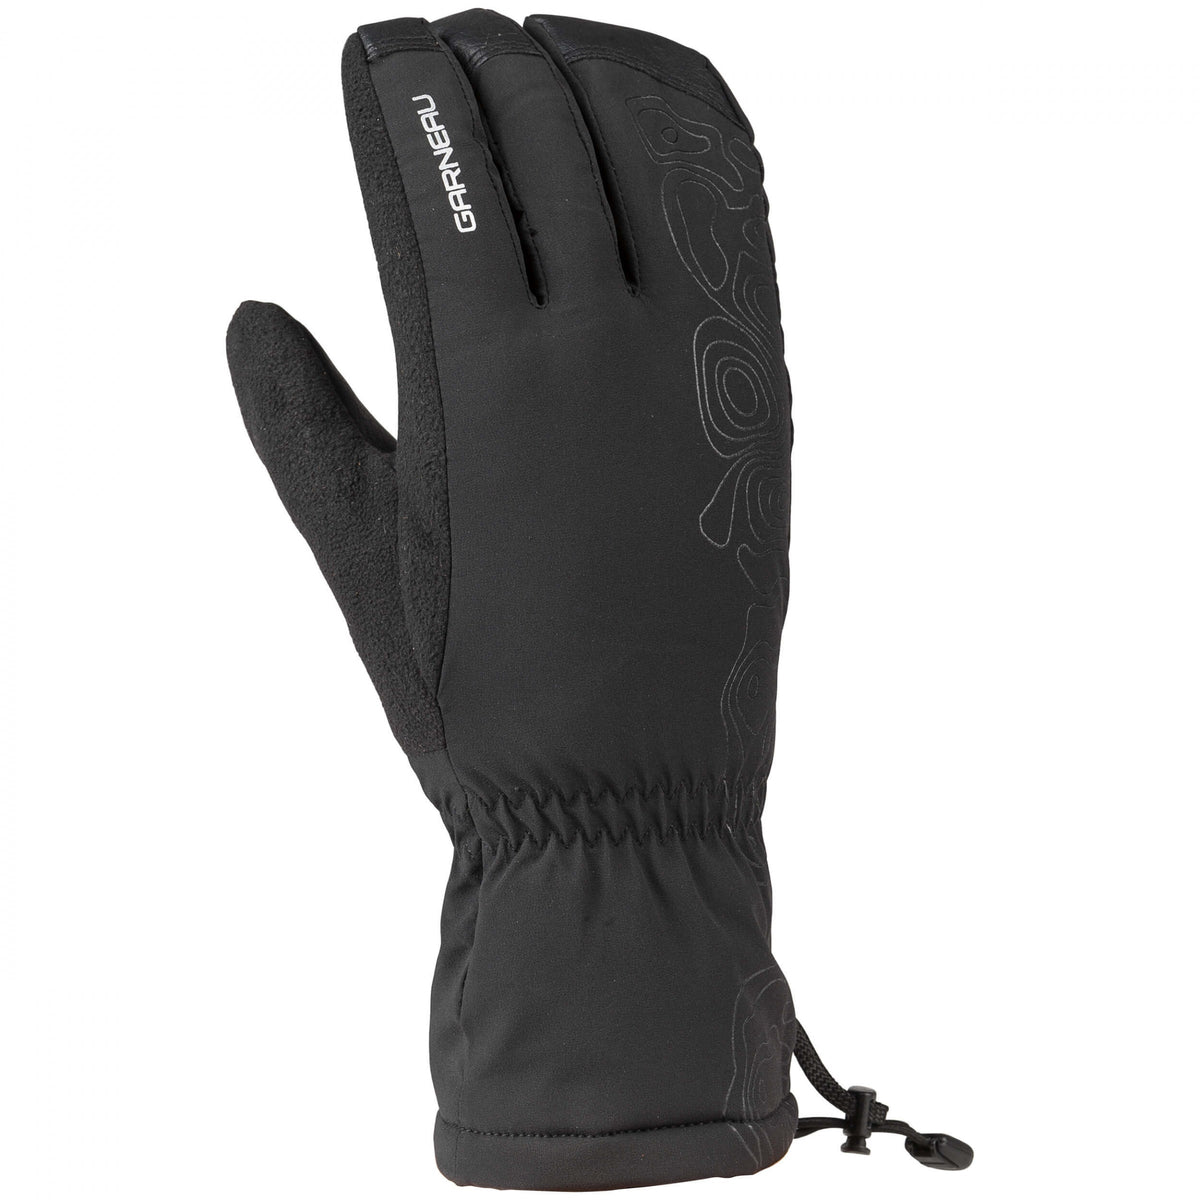 Hand gloves black colour